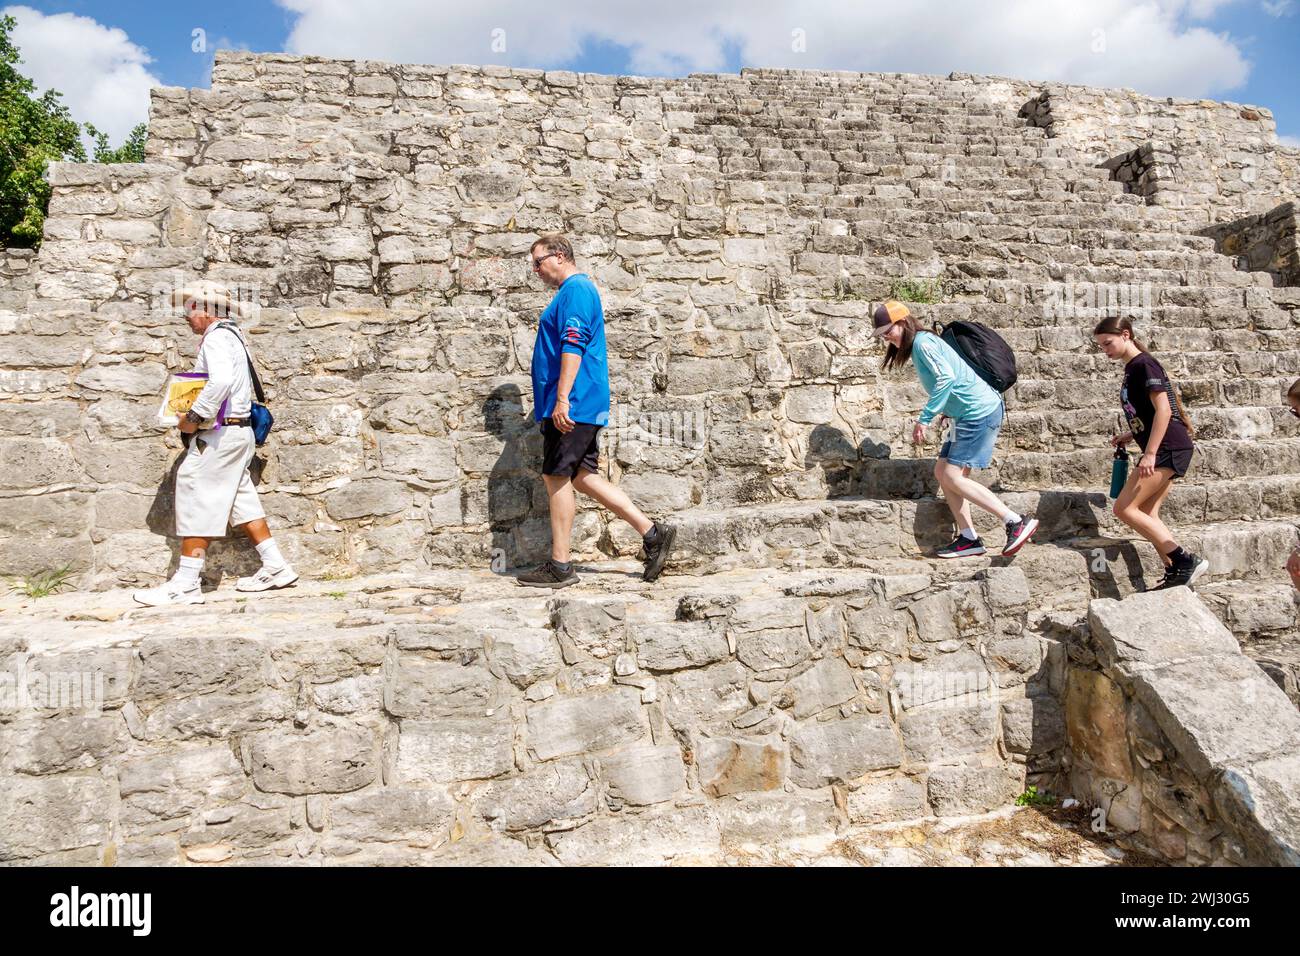 Merida Mexico, Dzibilchaltun Archäologische Zone Nationalpark, Maya Zivilisation Stadt Ruinen, Zona Arqueologica de Dzibilchaltun, Struktur 36 Felsen Stockfoto